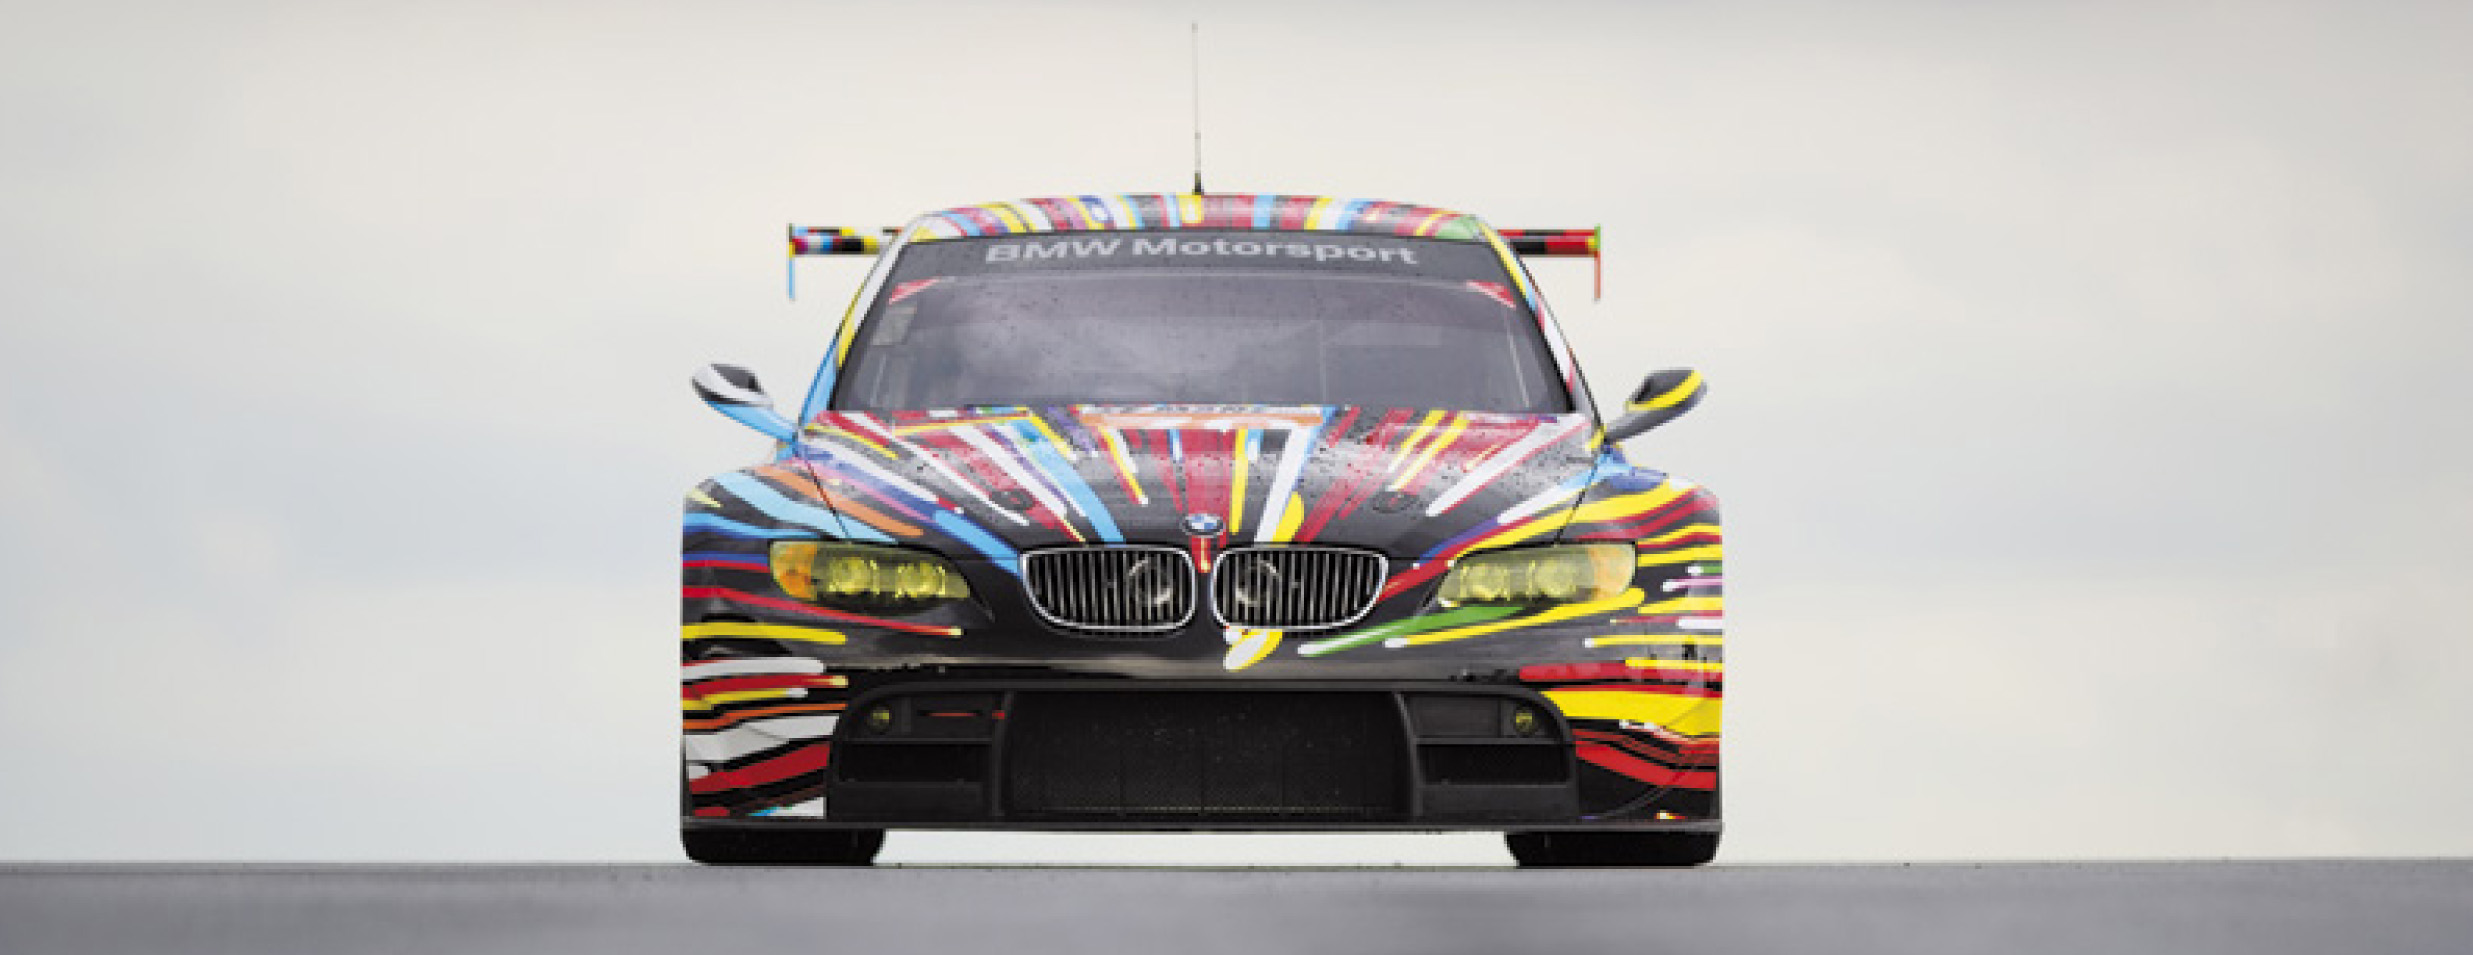 Egy helyben áll, mégis mintha már elindult volna felénk Jeff Koons modellje © BMW GROUP